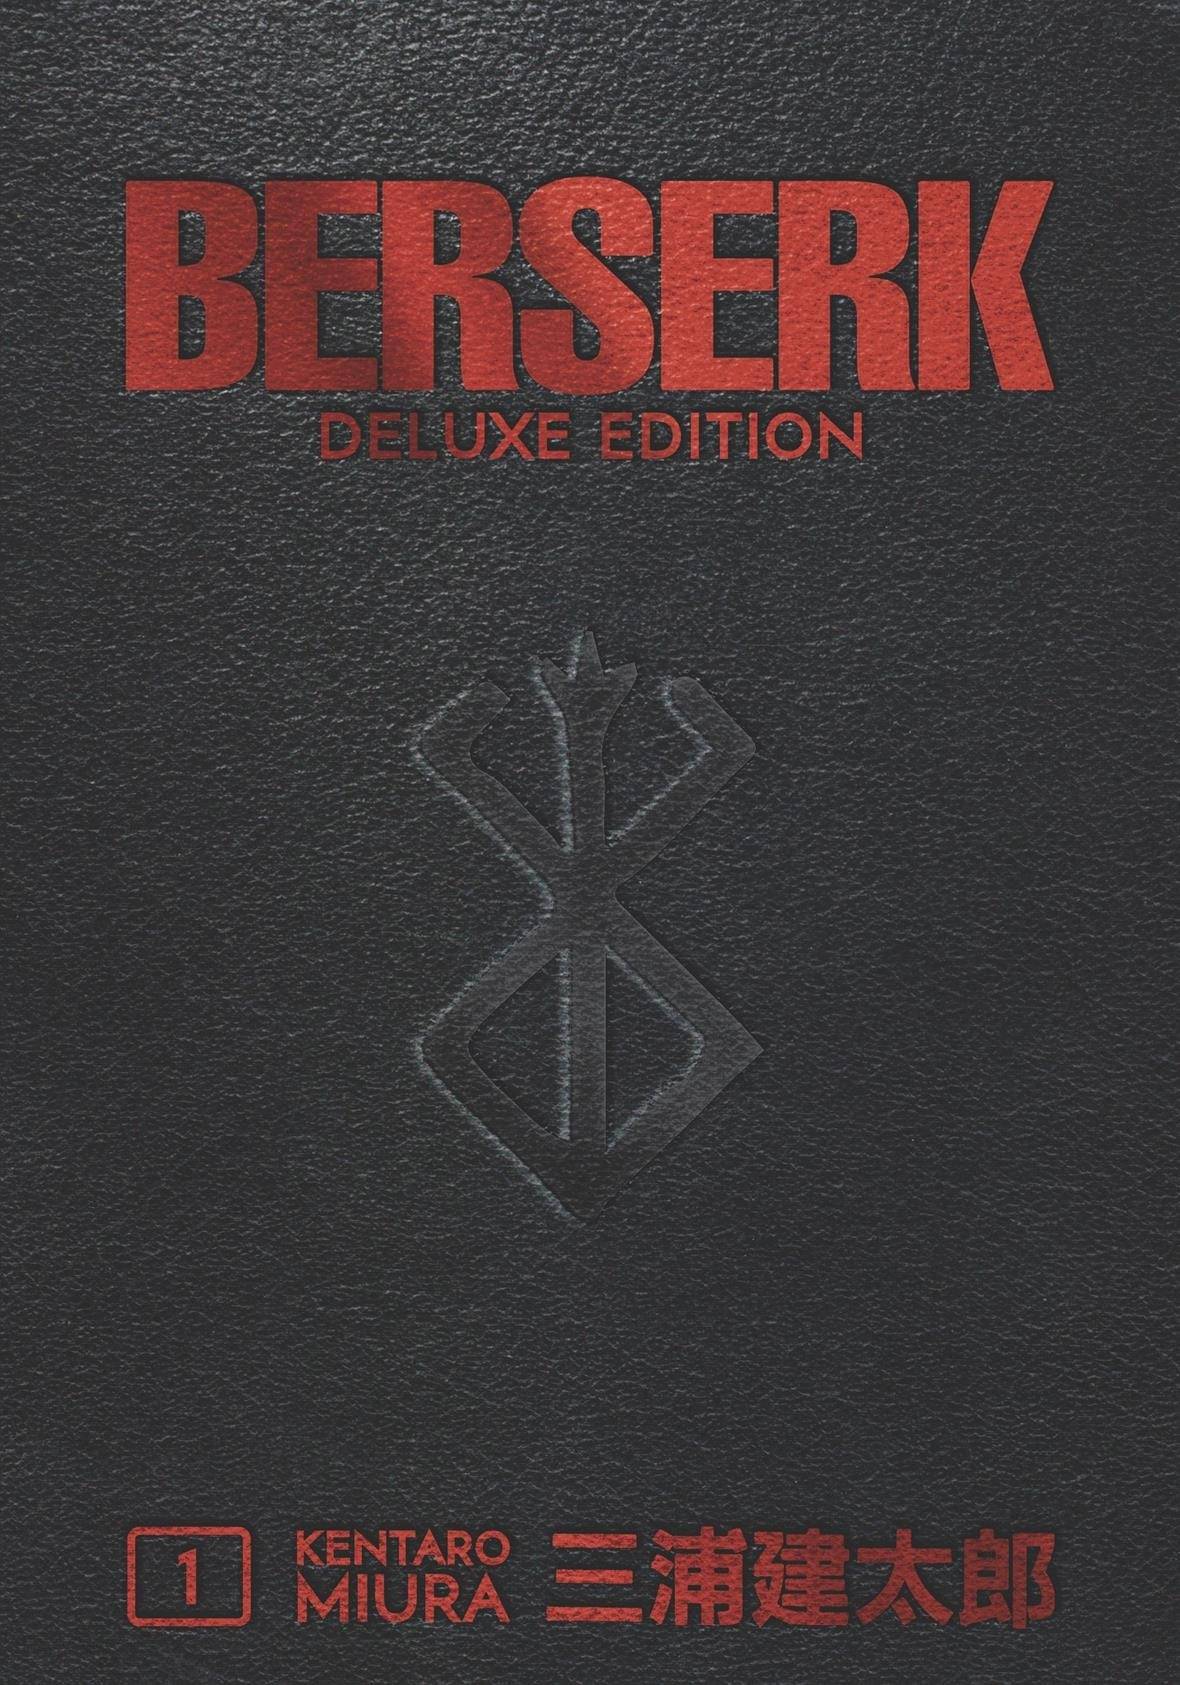 BERSERK DELUXE EDITION HC VOL 01 (OCT180363) (MR)